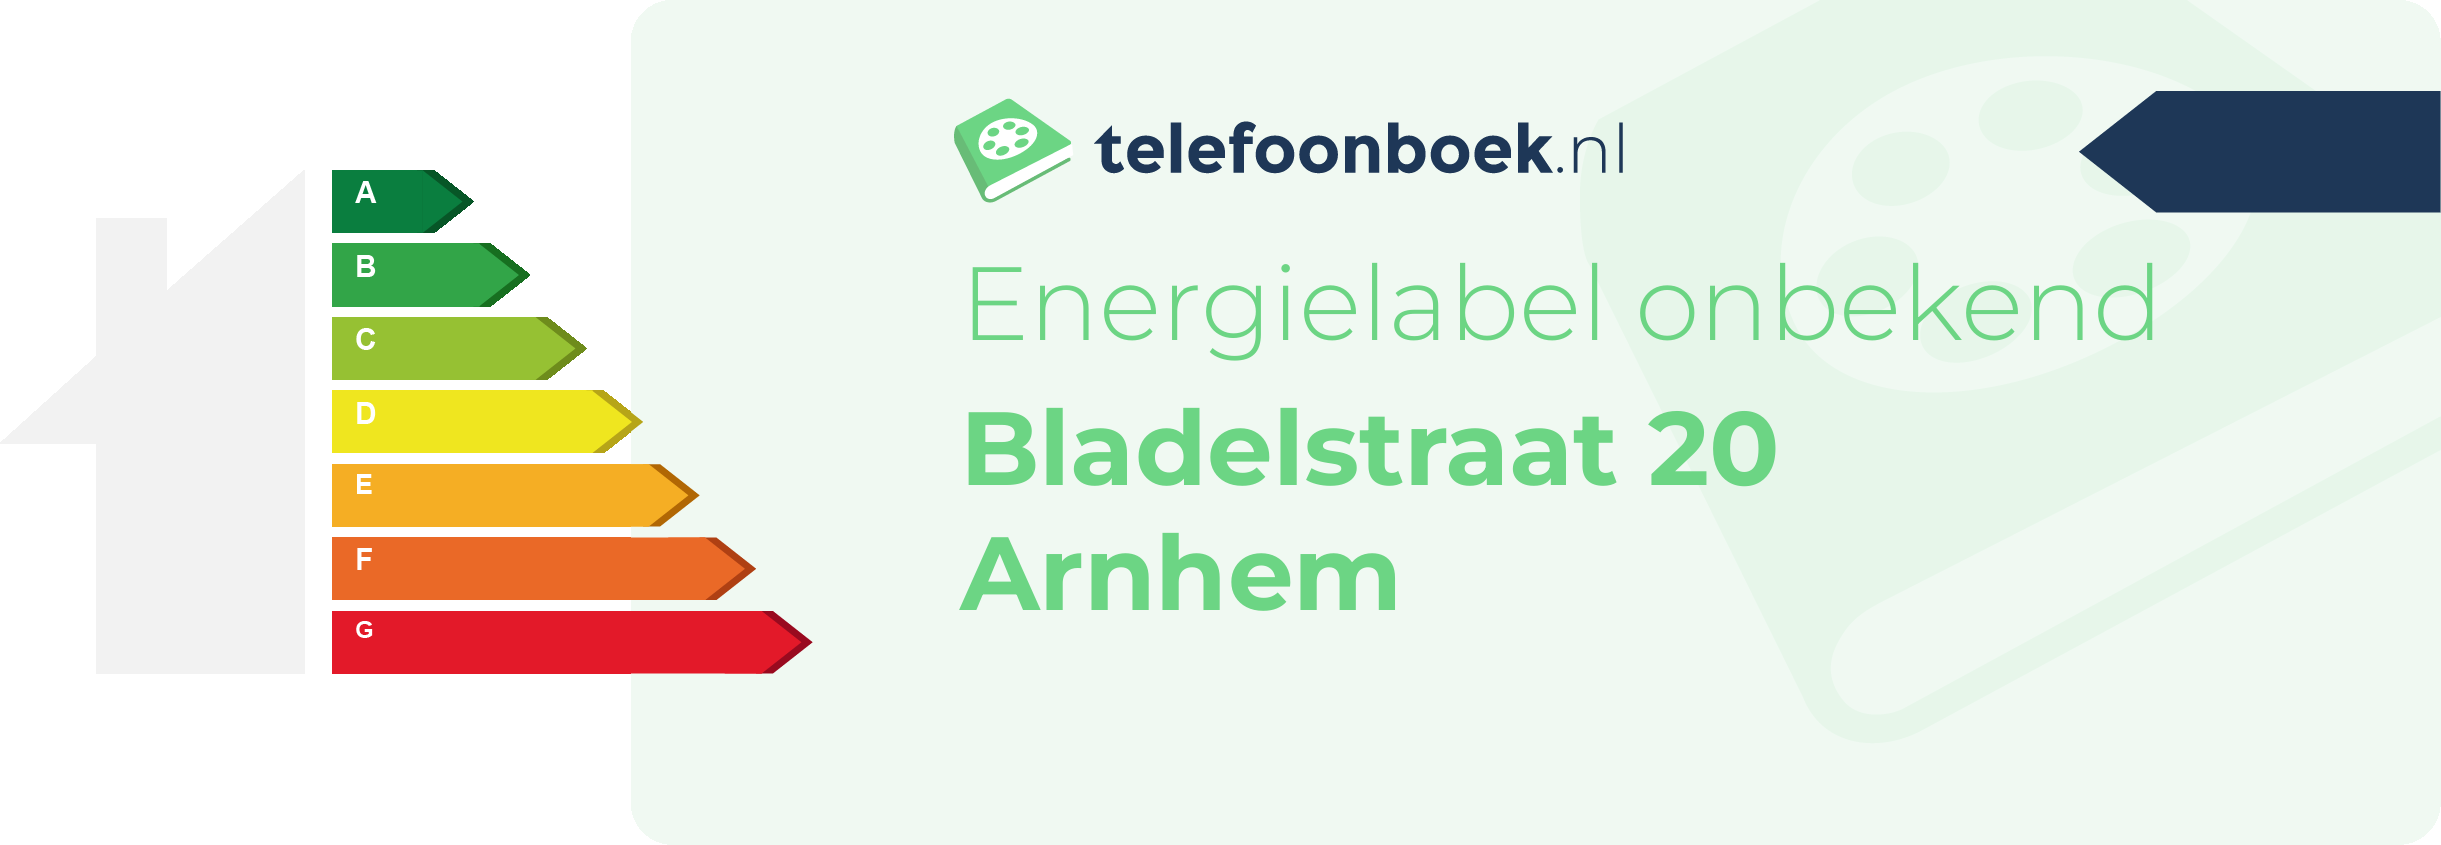 Energielabel Bladelstraat 20 Arnhem